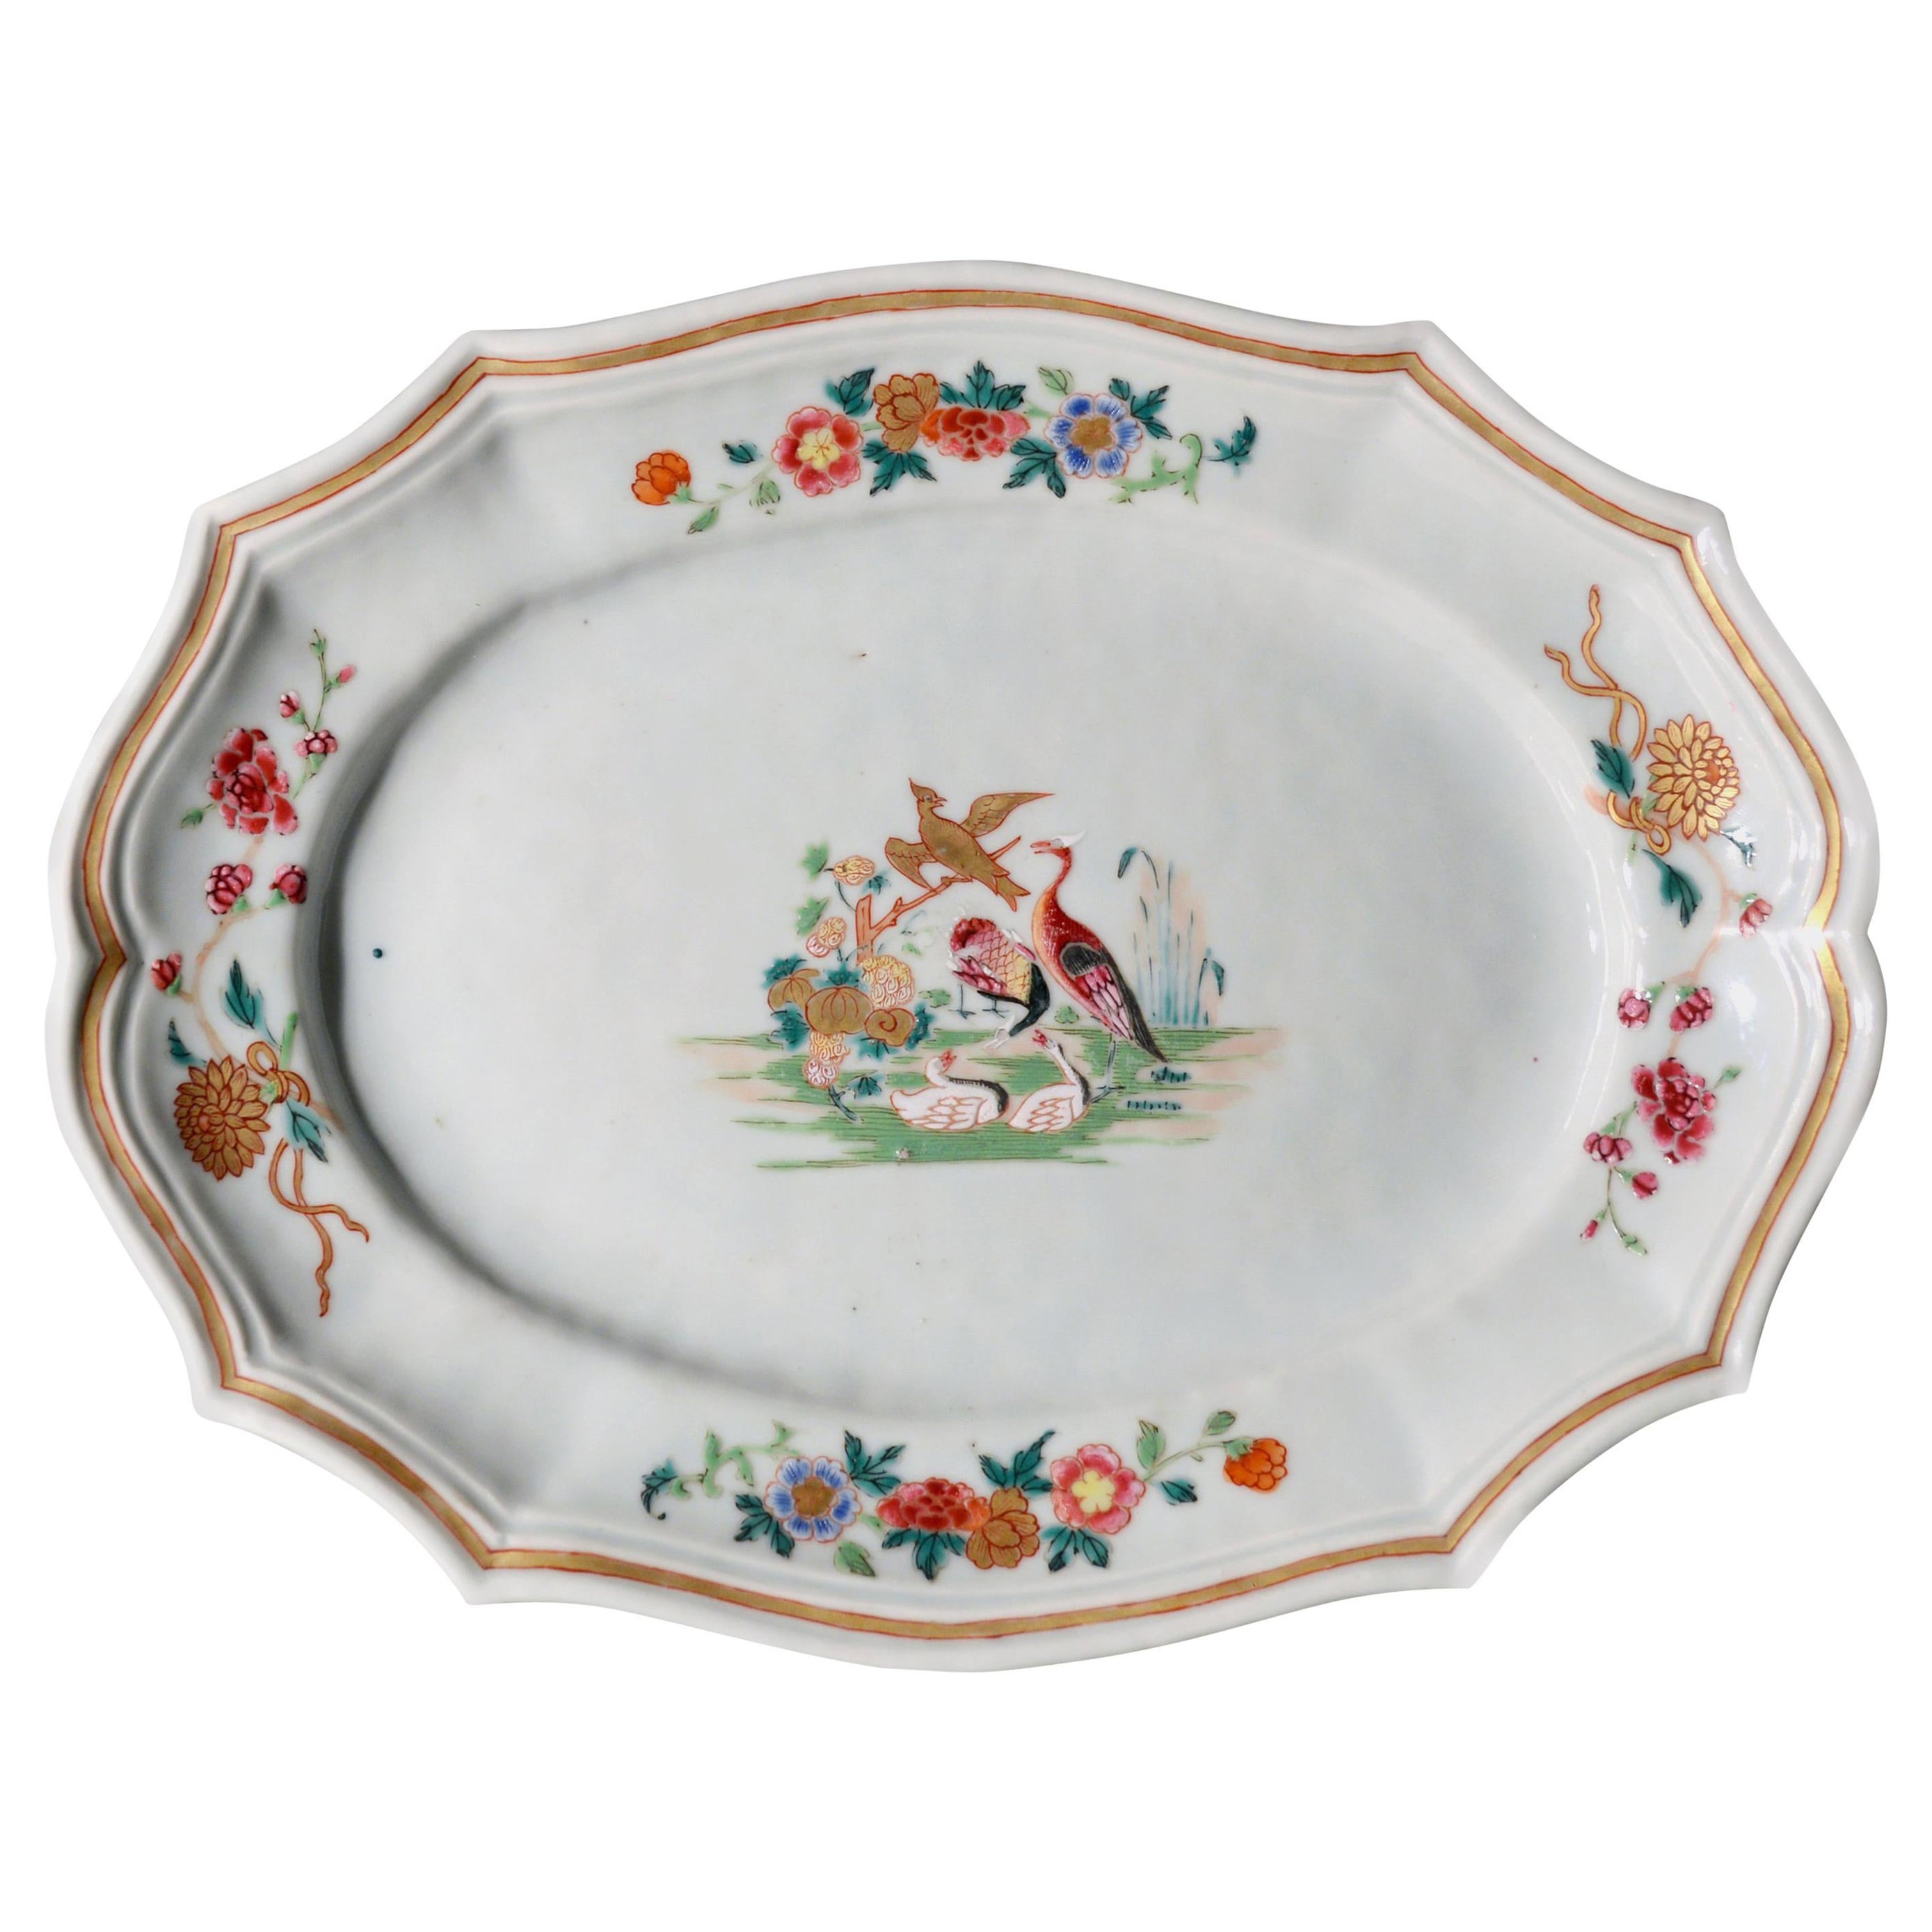 Plat en porcelaine argentée d'exportation chinoise du 18ème siècle décoré d'oiseaux,